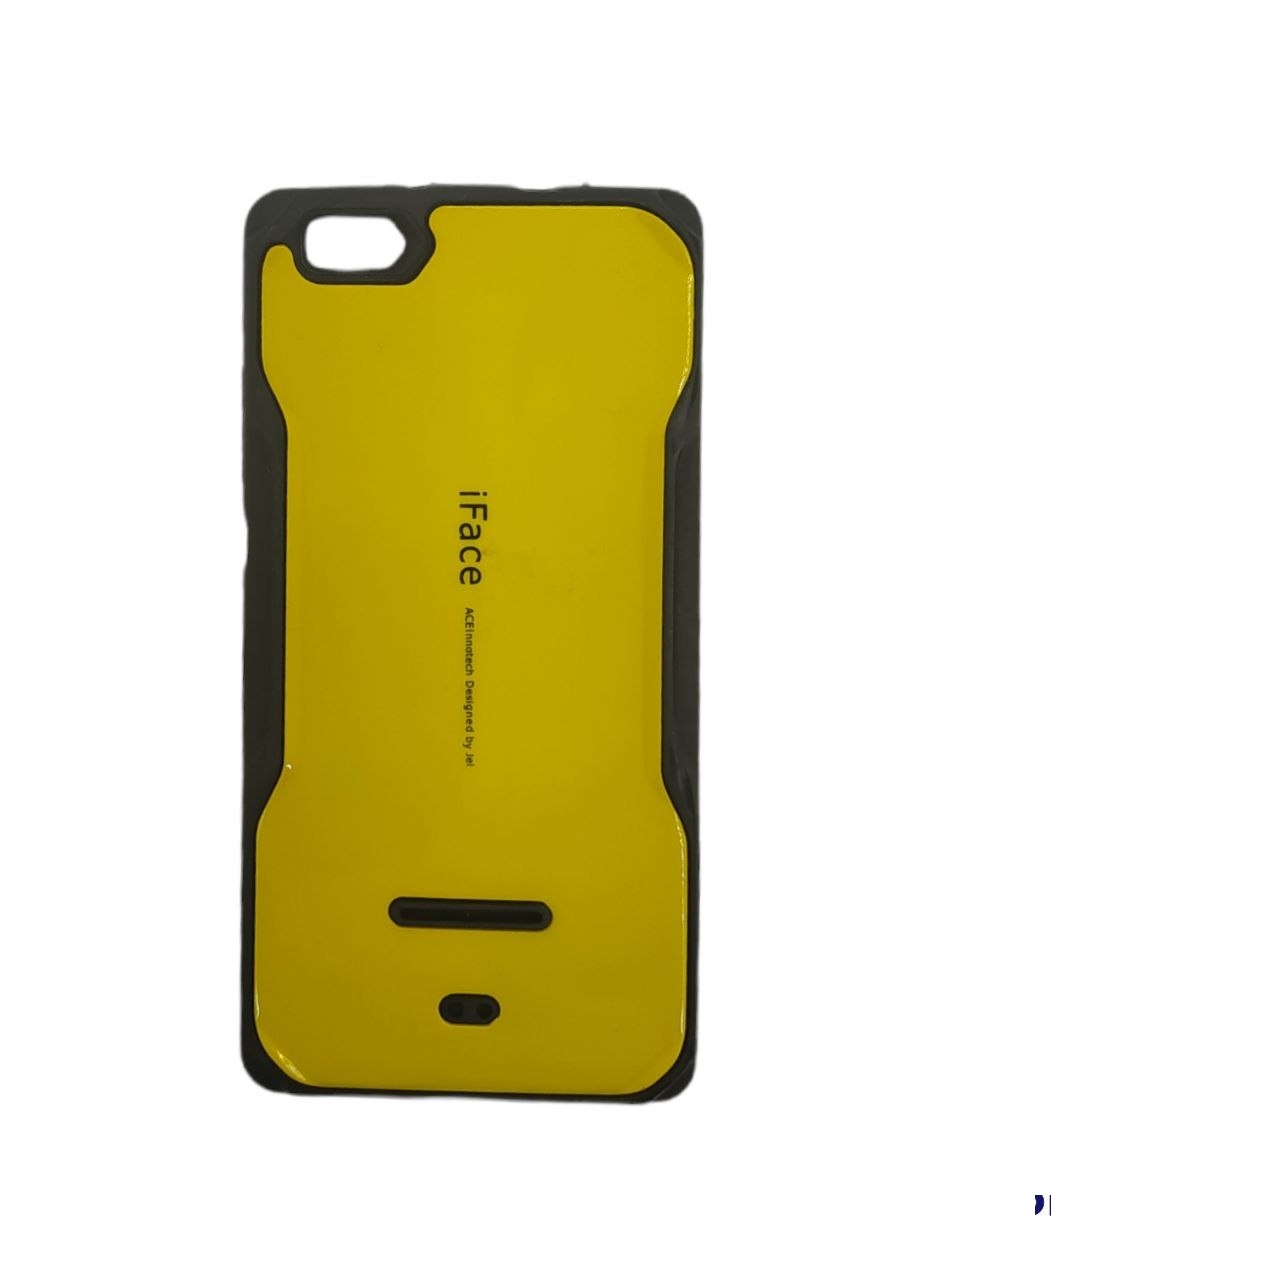 کاور مدل ifice مناسب برای گوشی موبایل هواوی P8lite رنگ خردلی